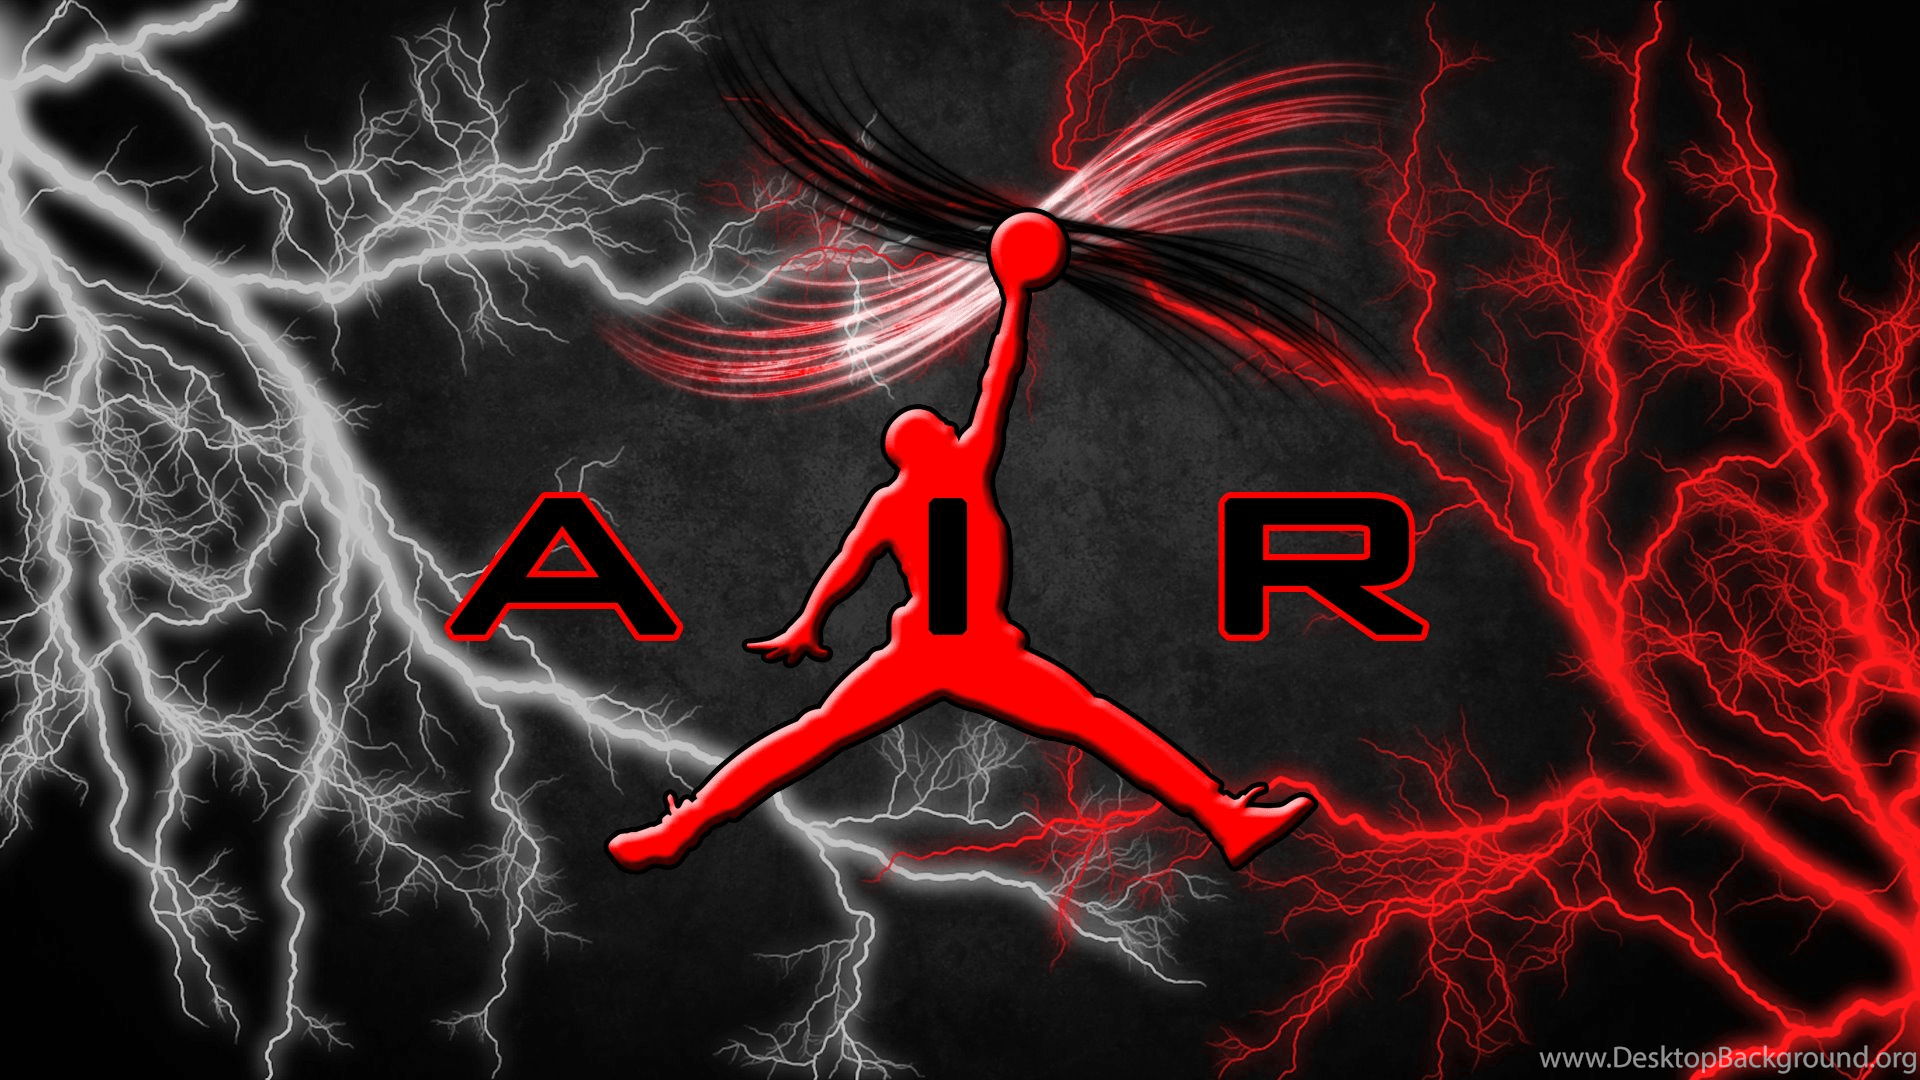 Air Jordan Flight Logo - Download Download Air Jordan Flight Logo Wallpaper Image Desktop